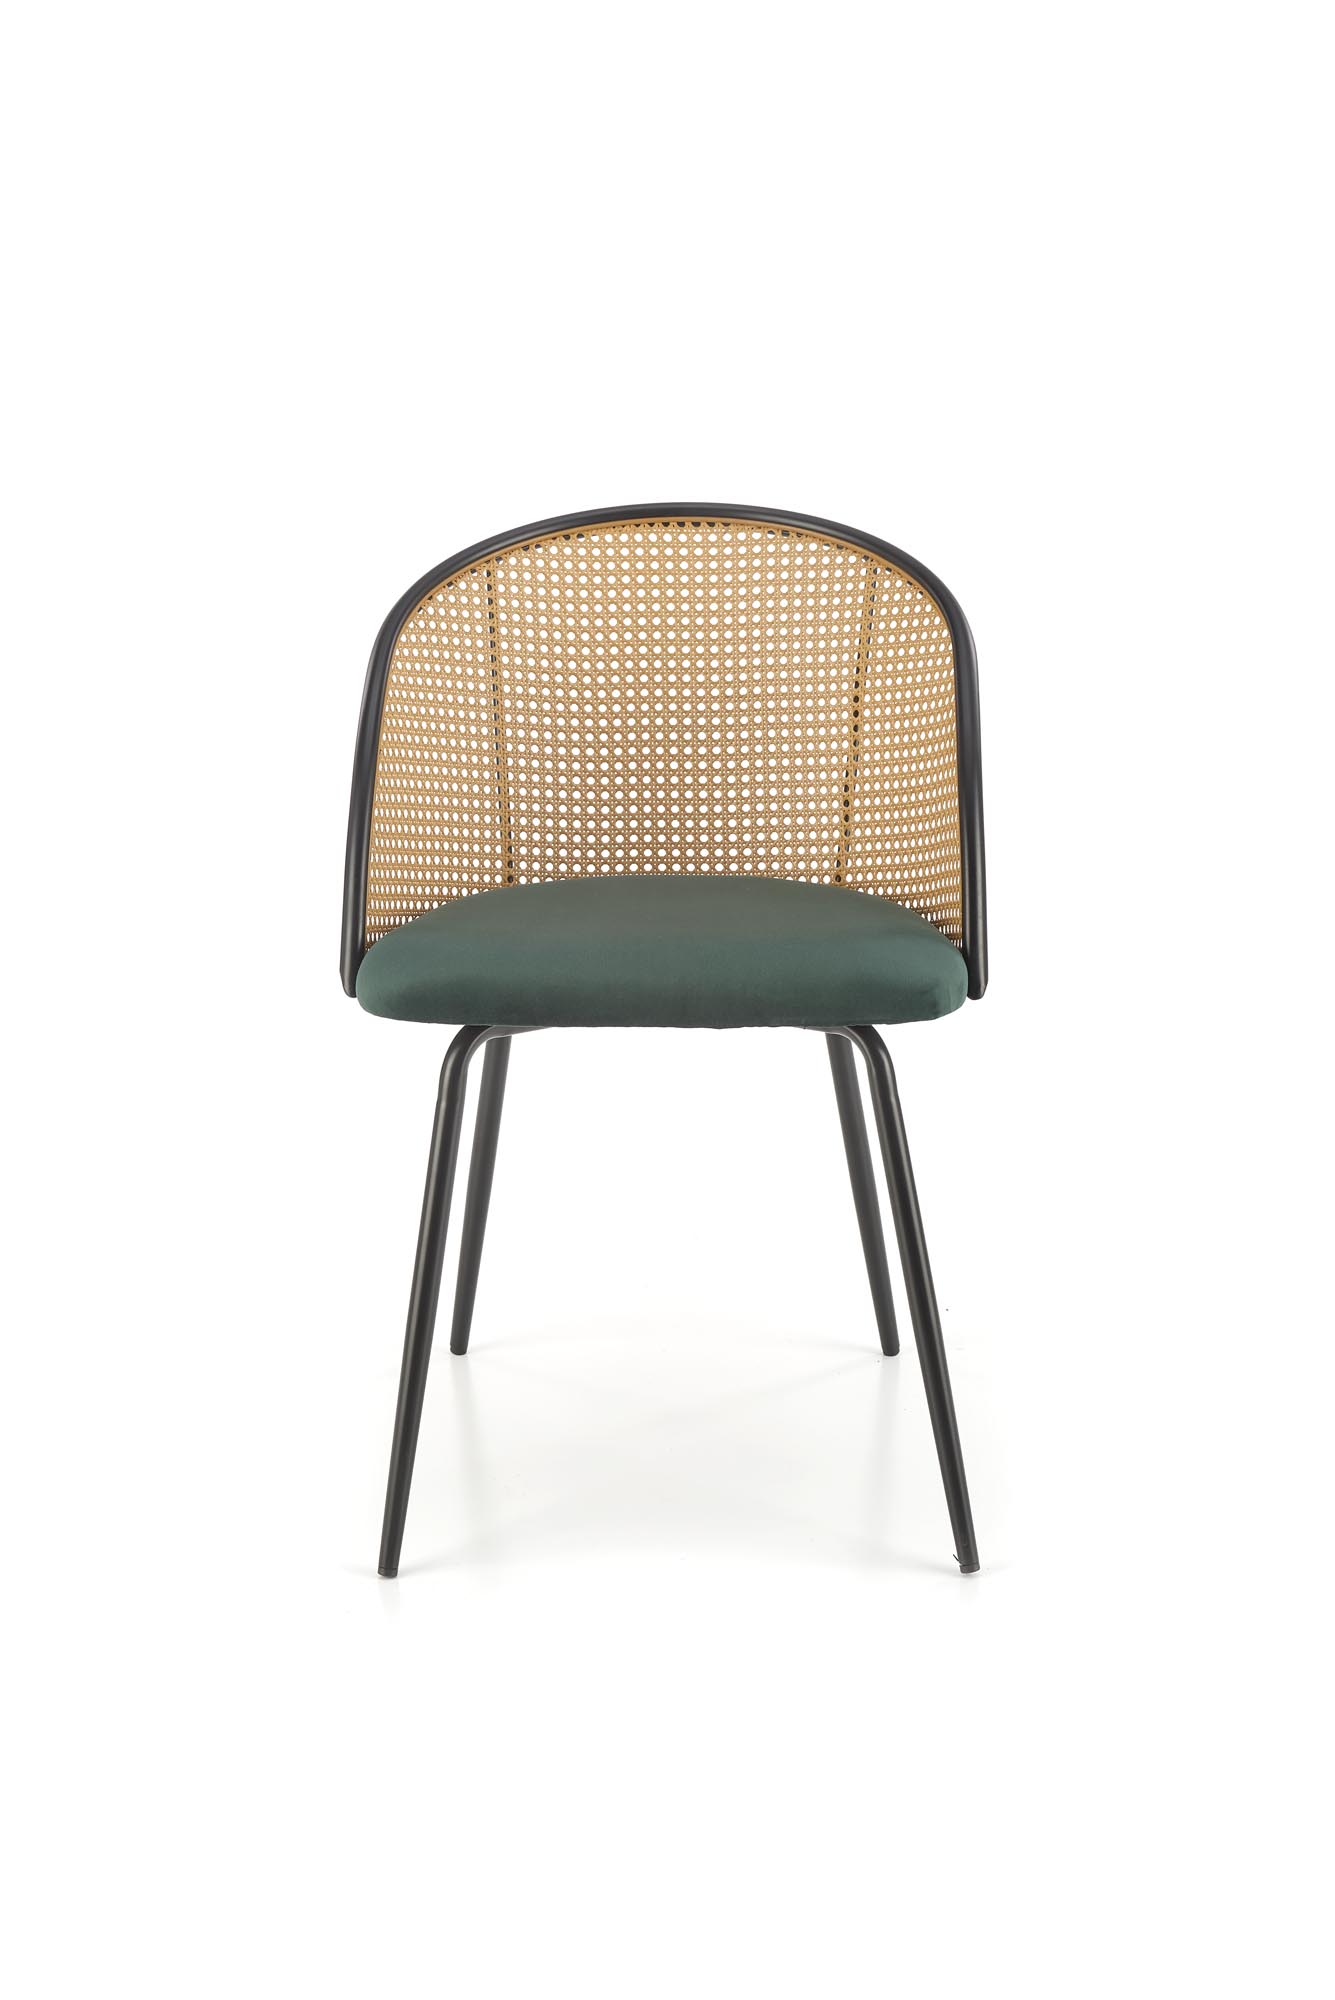 Krzesło z tapicerowanym siedziskiem K508 - ciemna zieleń krzesło z tapicerowanym siedziskiem k508 - ciemna zieleń